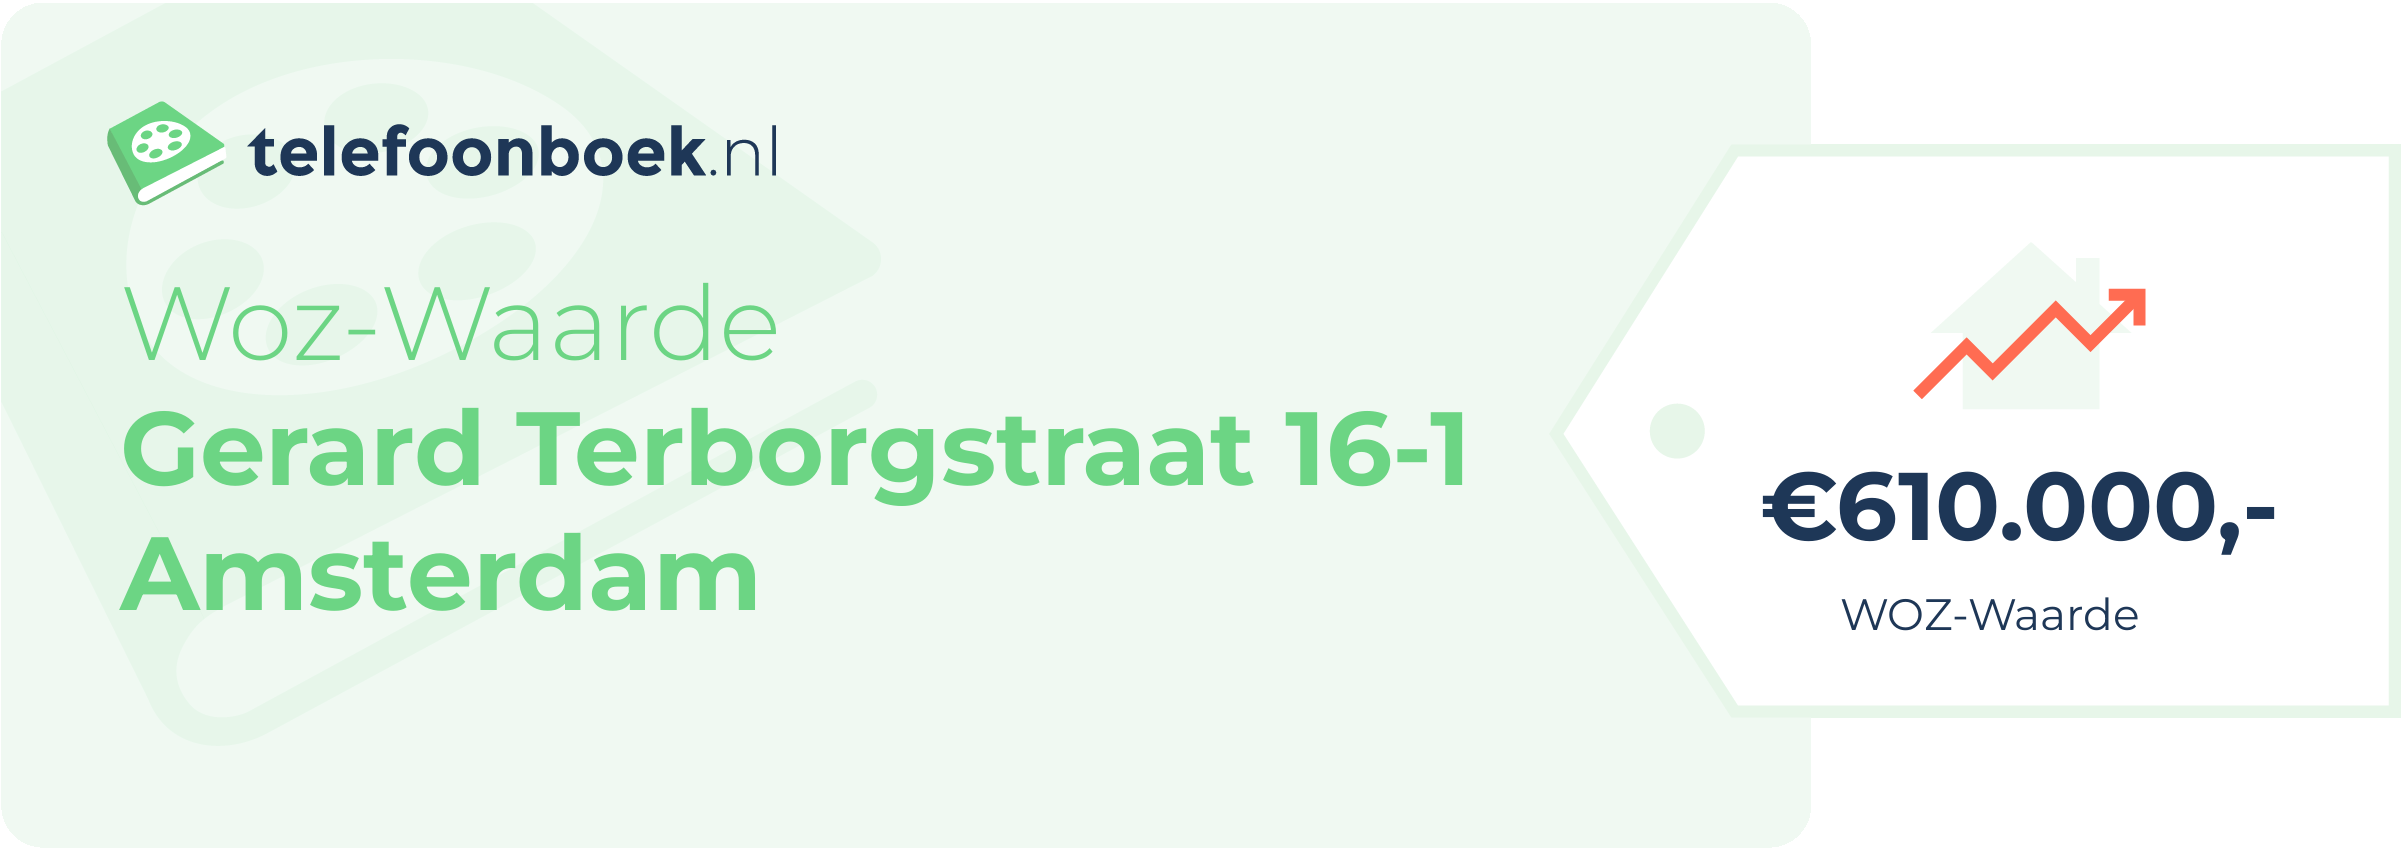 WOZ-waarde Gerard Terborgstraat 16-1 Amsterdam